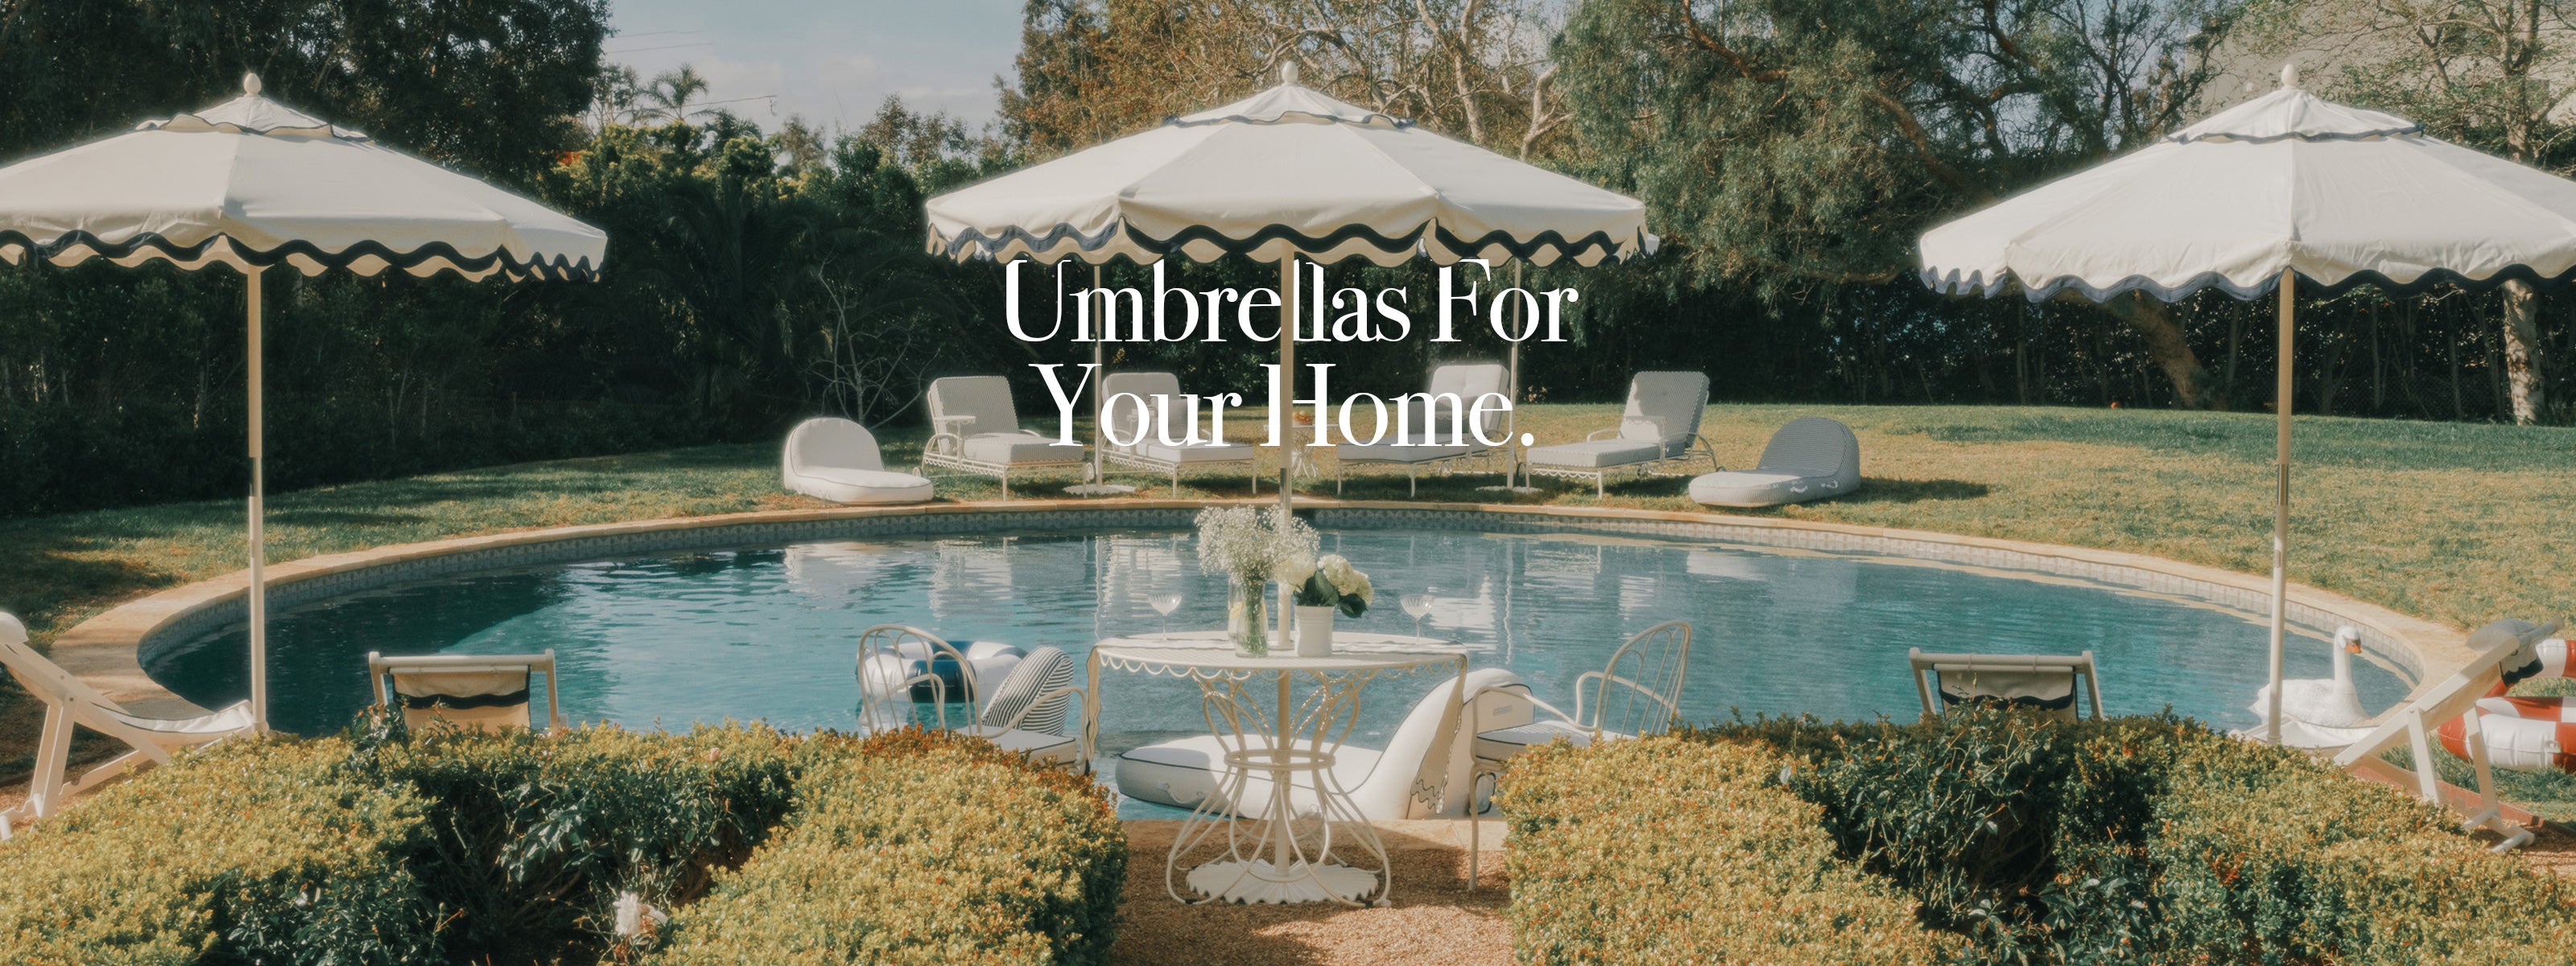 Home Umbrellas